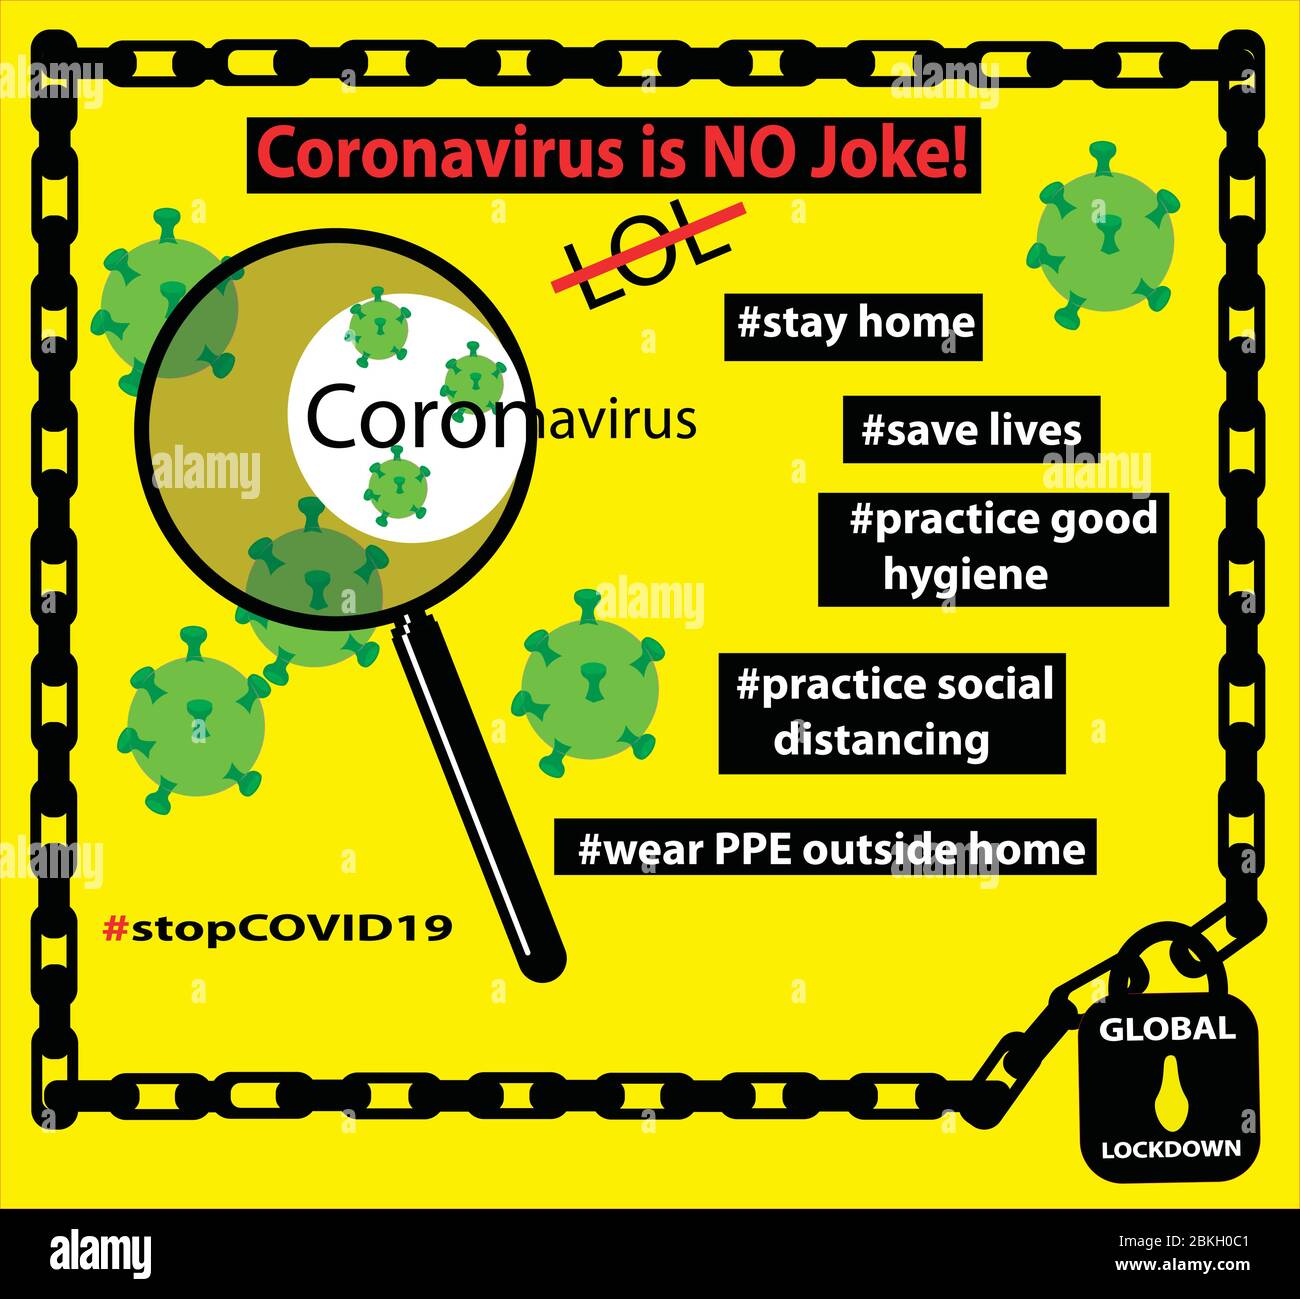 info-graphe du virus de la couronne jaune avec des conseils de prévention pour contrôler la propagation du virus parce que la couronne n'est pas une blague, elle a causé un verrouillage global Illustration de Vecteur